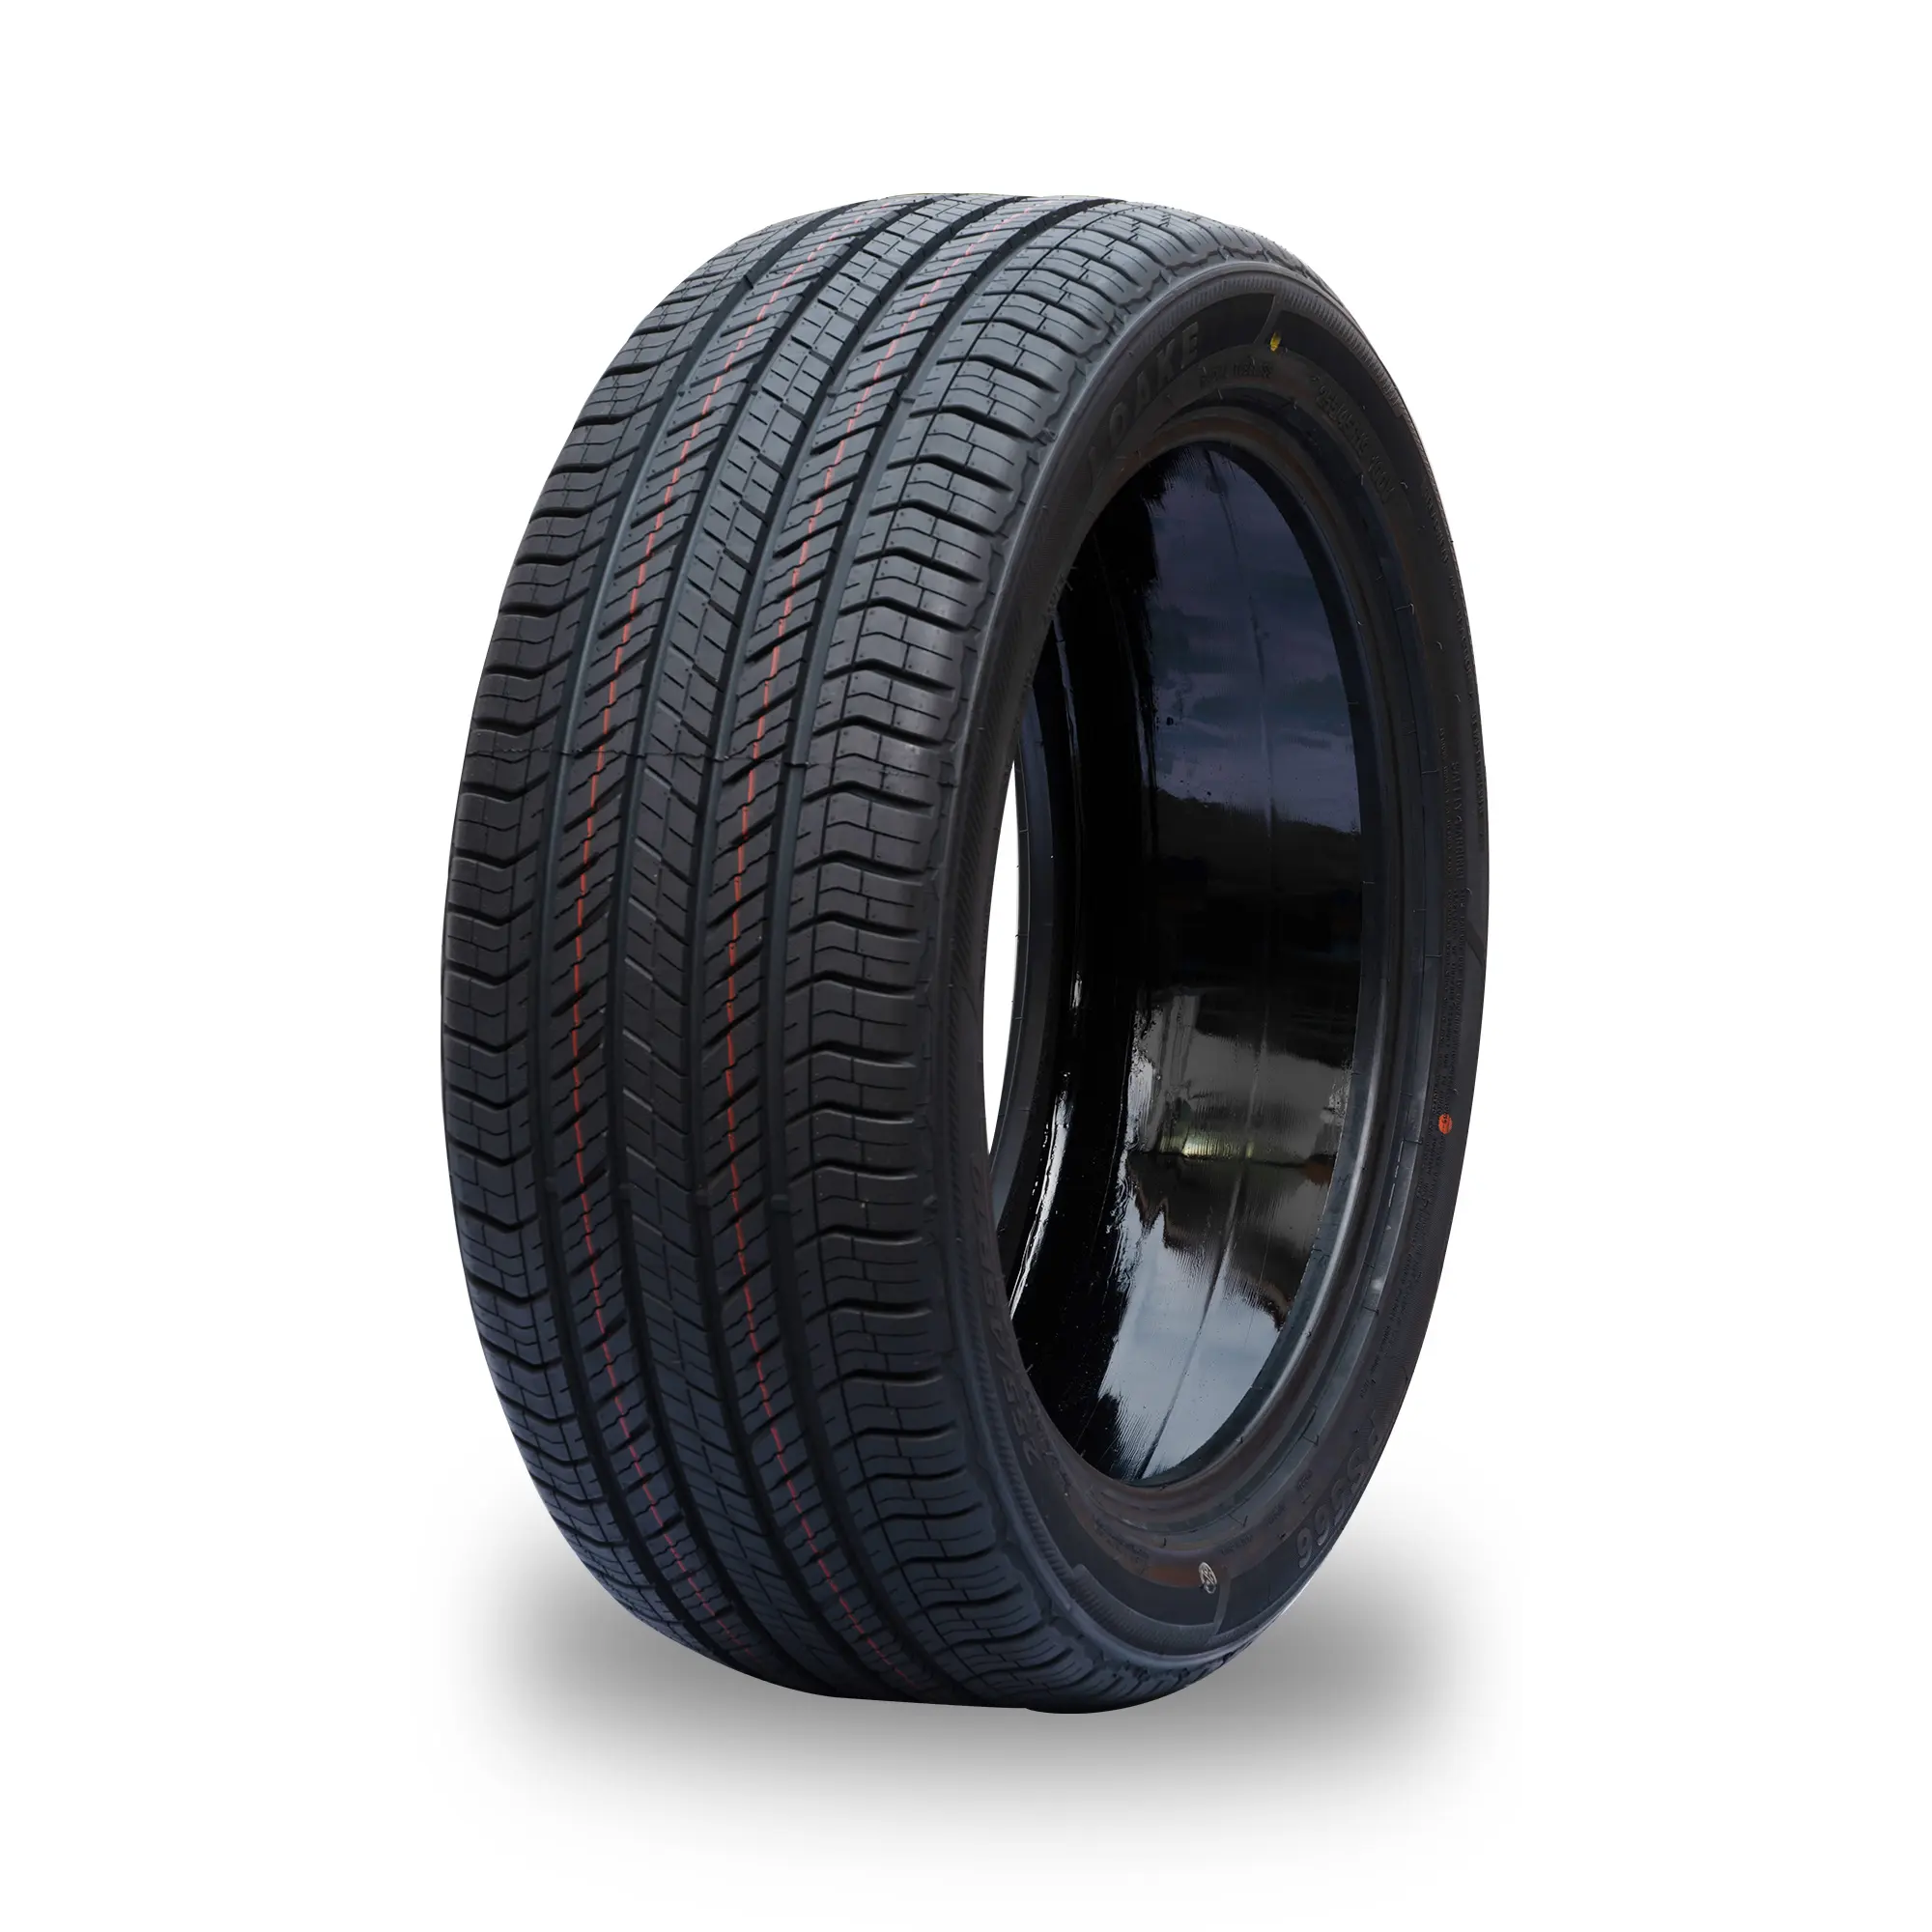 공장 새로운 자체 밀봉 기술 고품질 승용차 안전 타이어